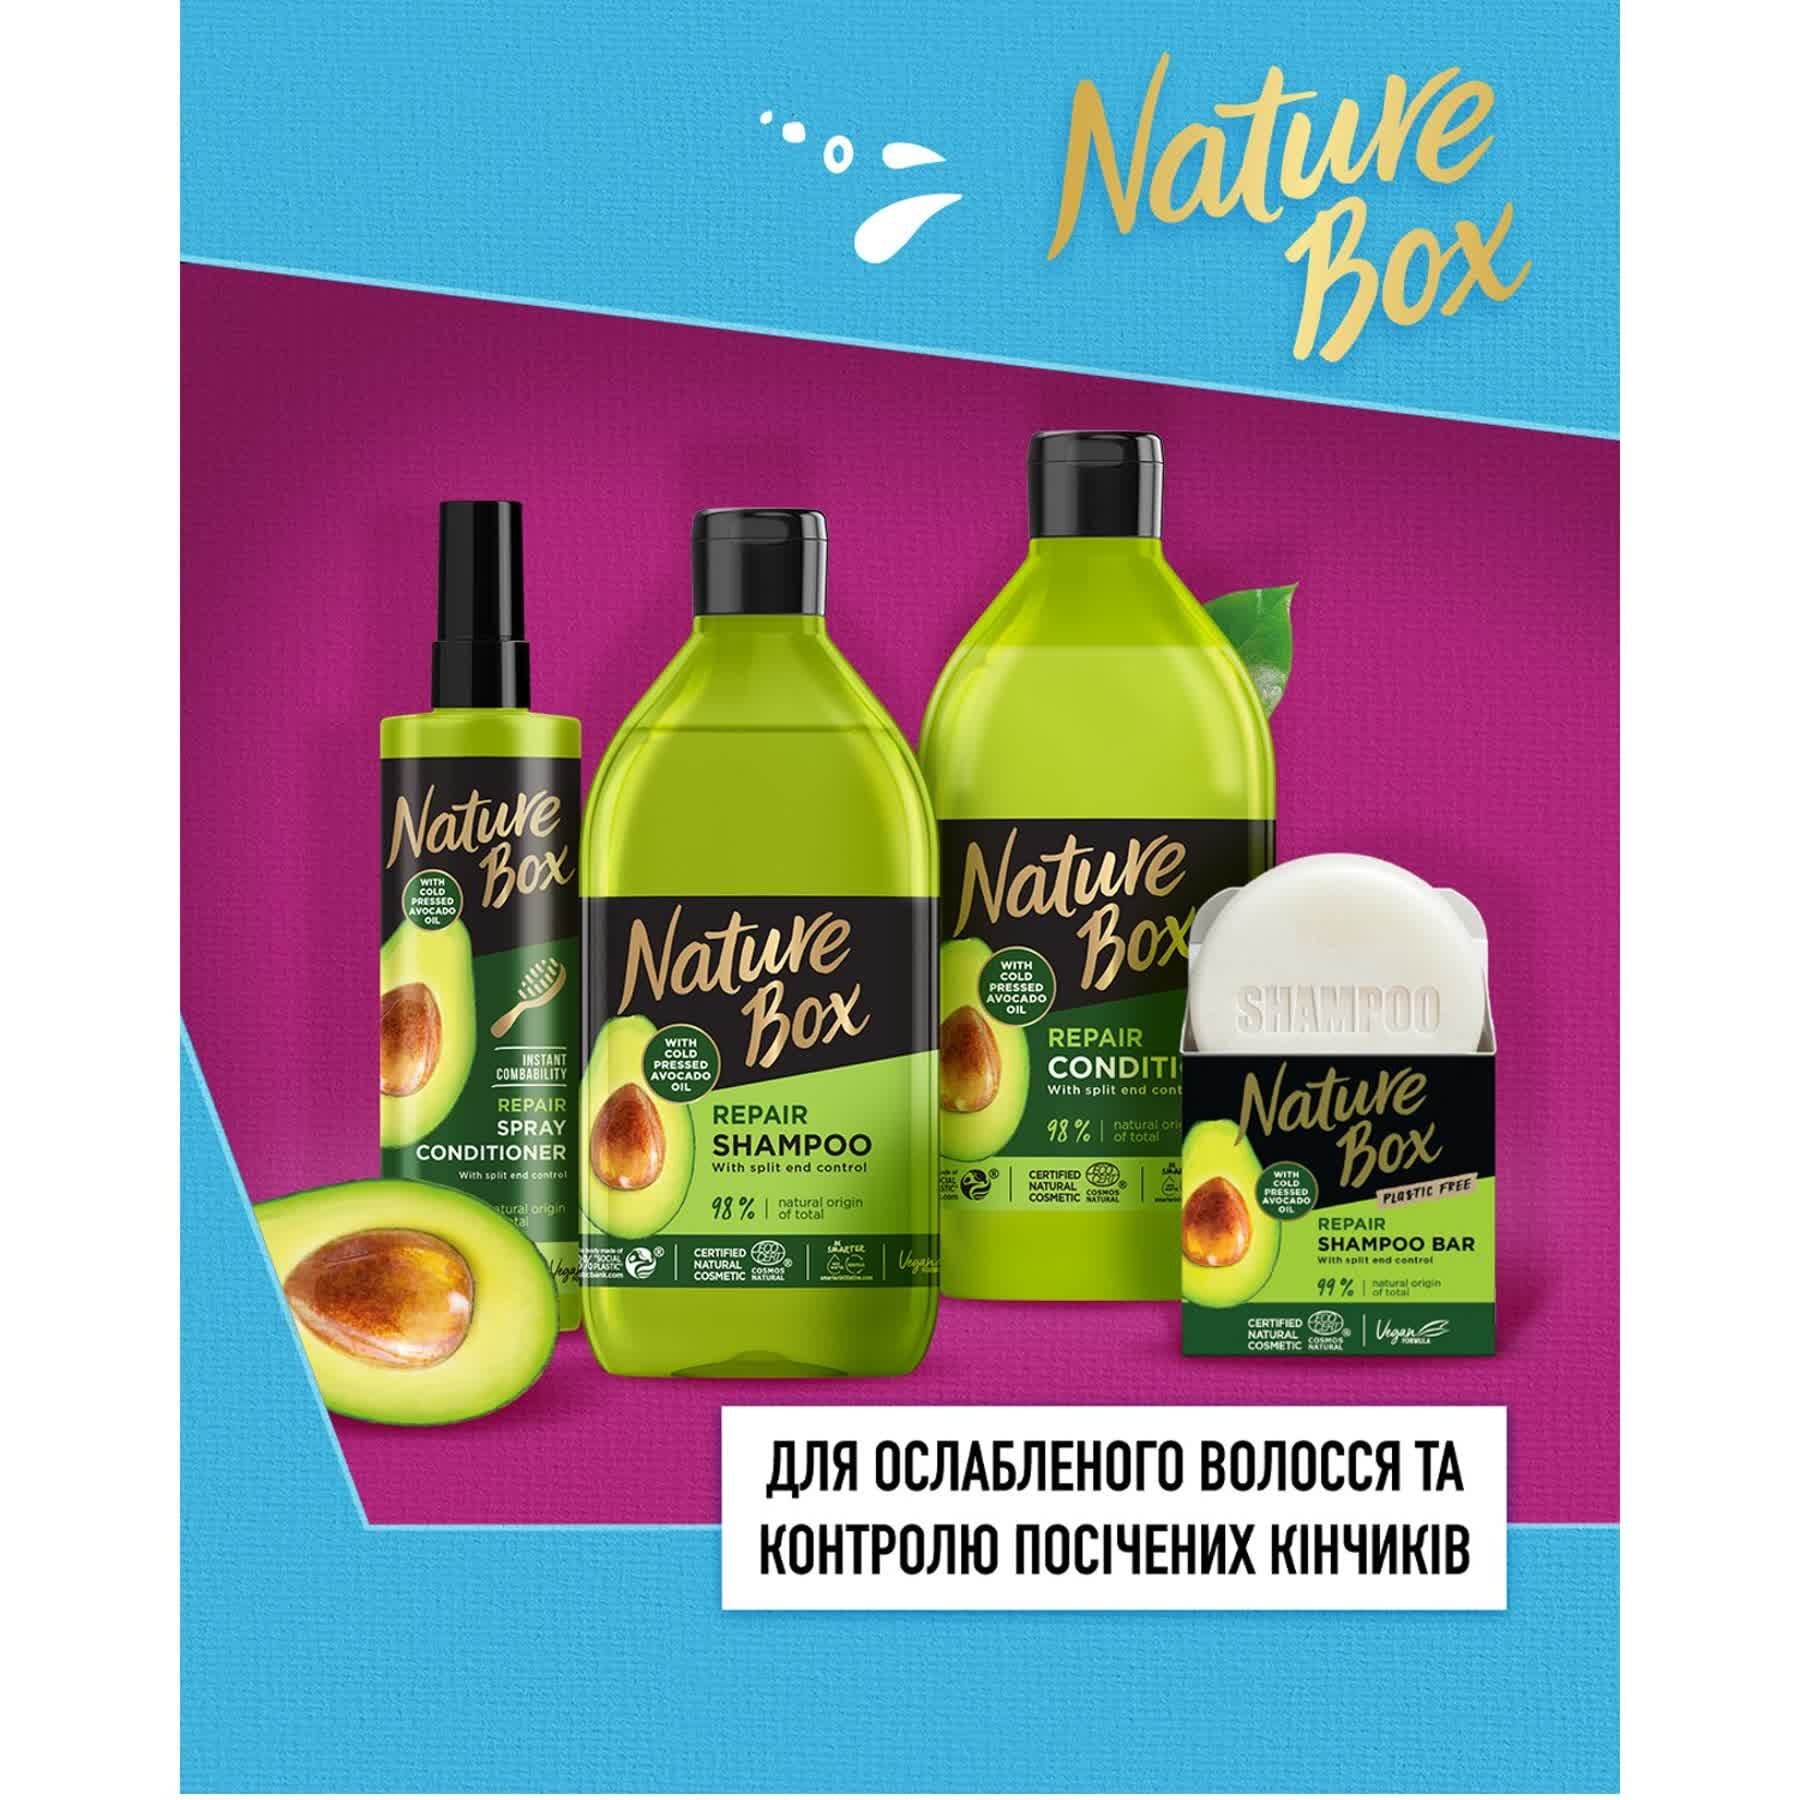 Твердий шампунь Nature Box для відновлення волосся з олією авокадо холодного віджиму 85 г